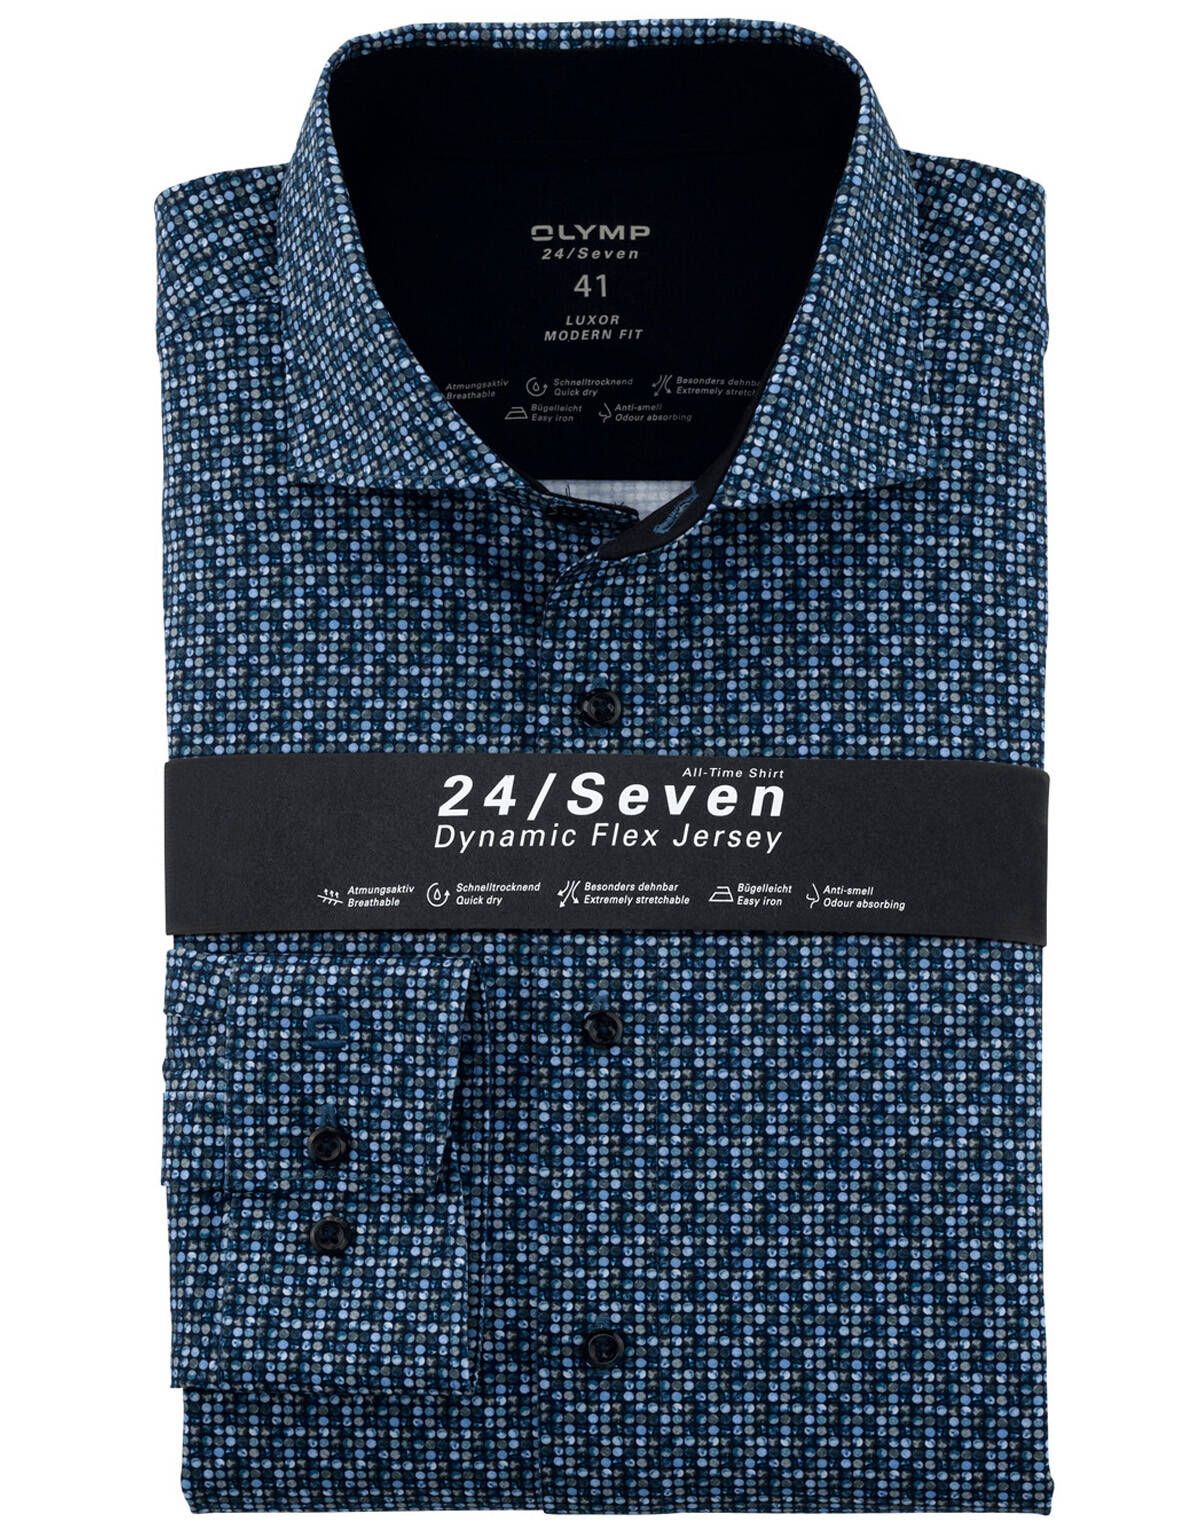 Рубашка трикотажная мужская OLYMP с принтом Luxor 24/7, modern fit[СИНИЙ]